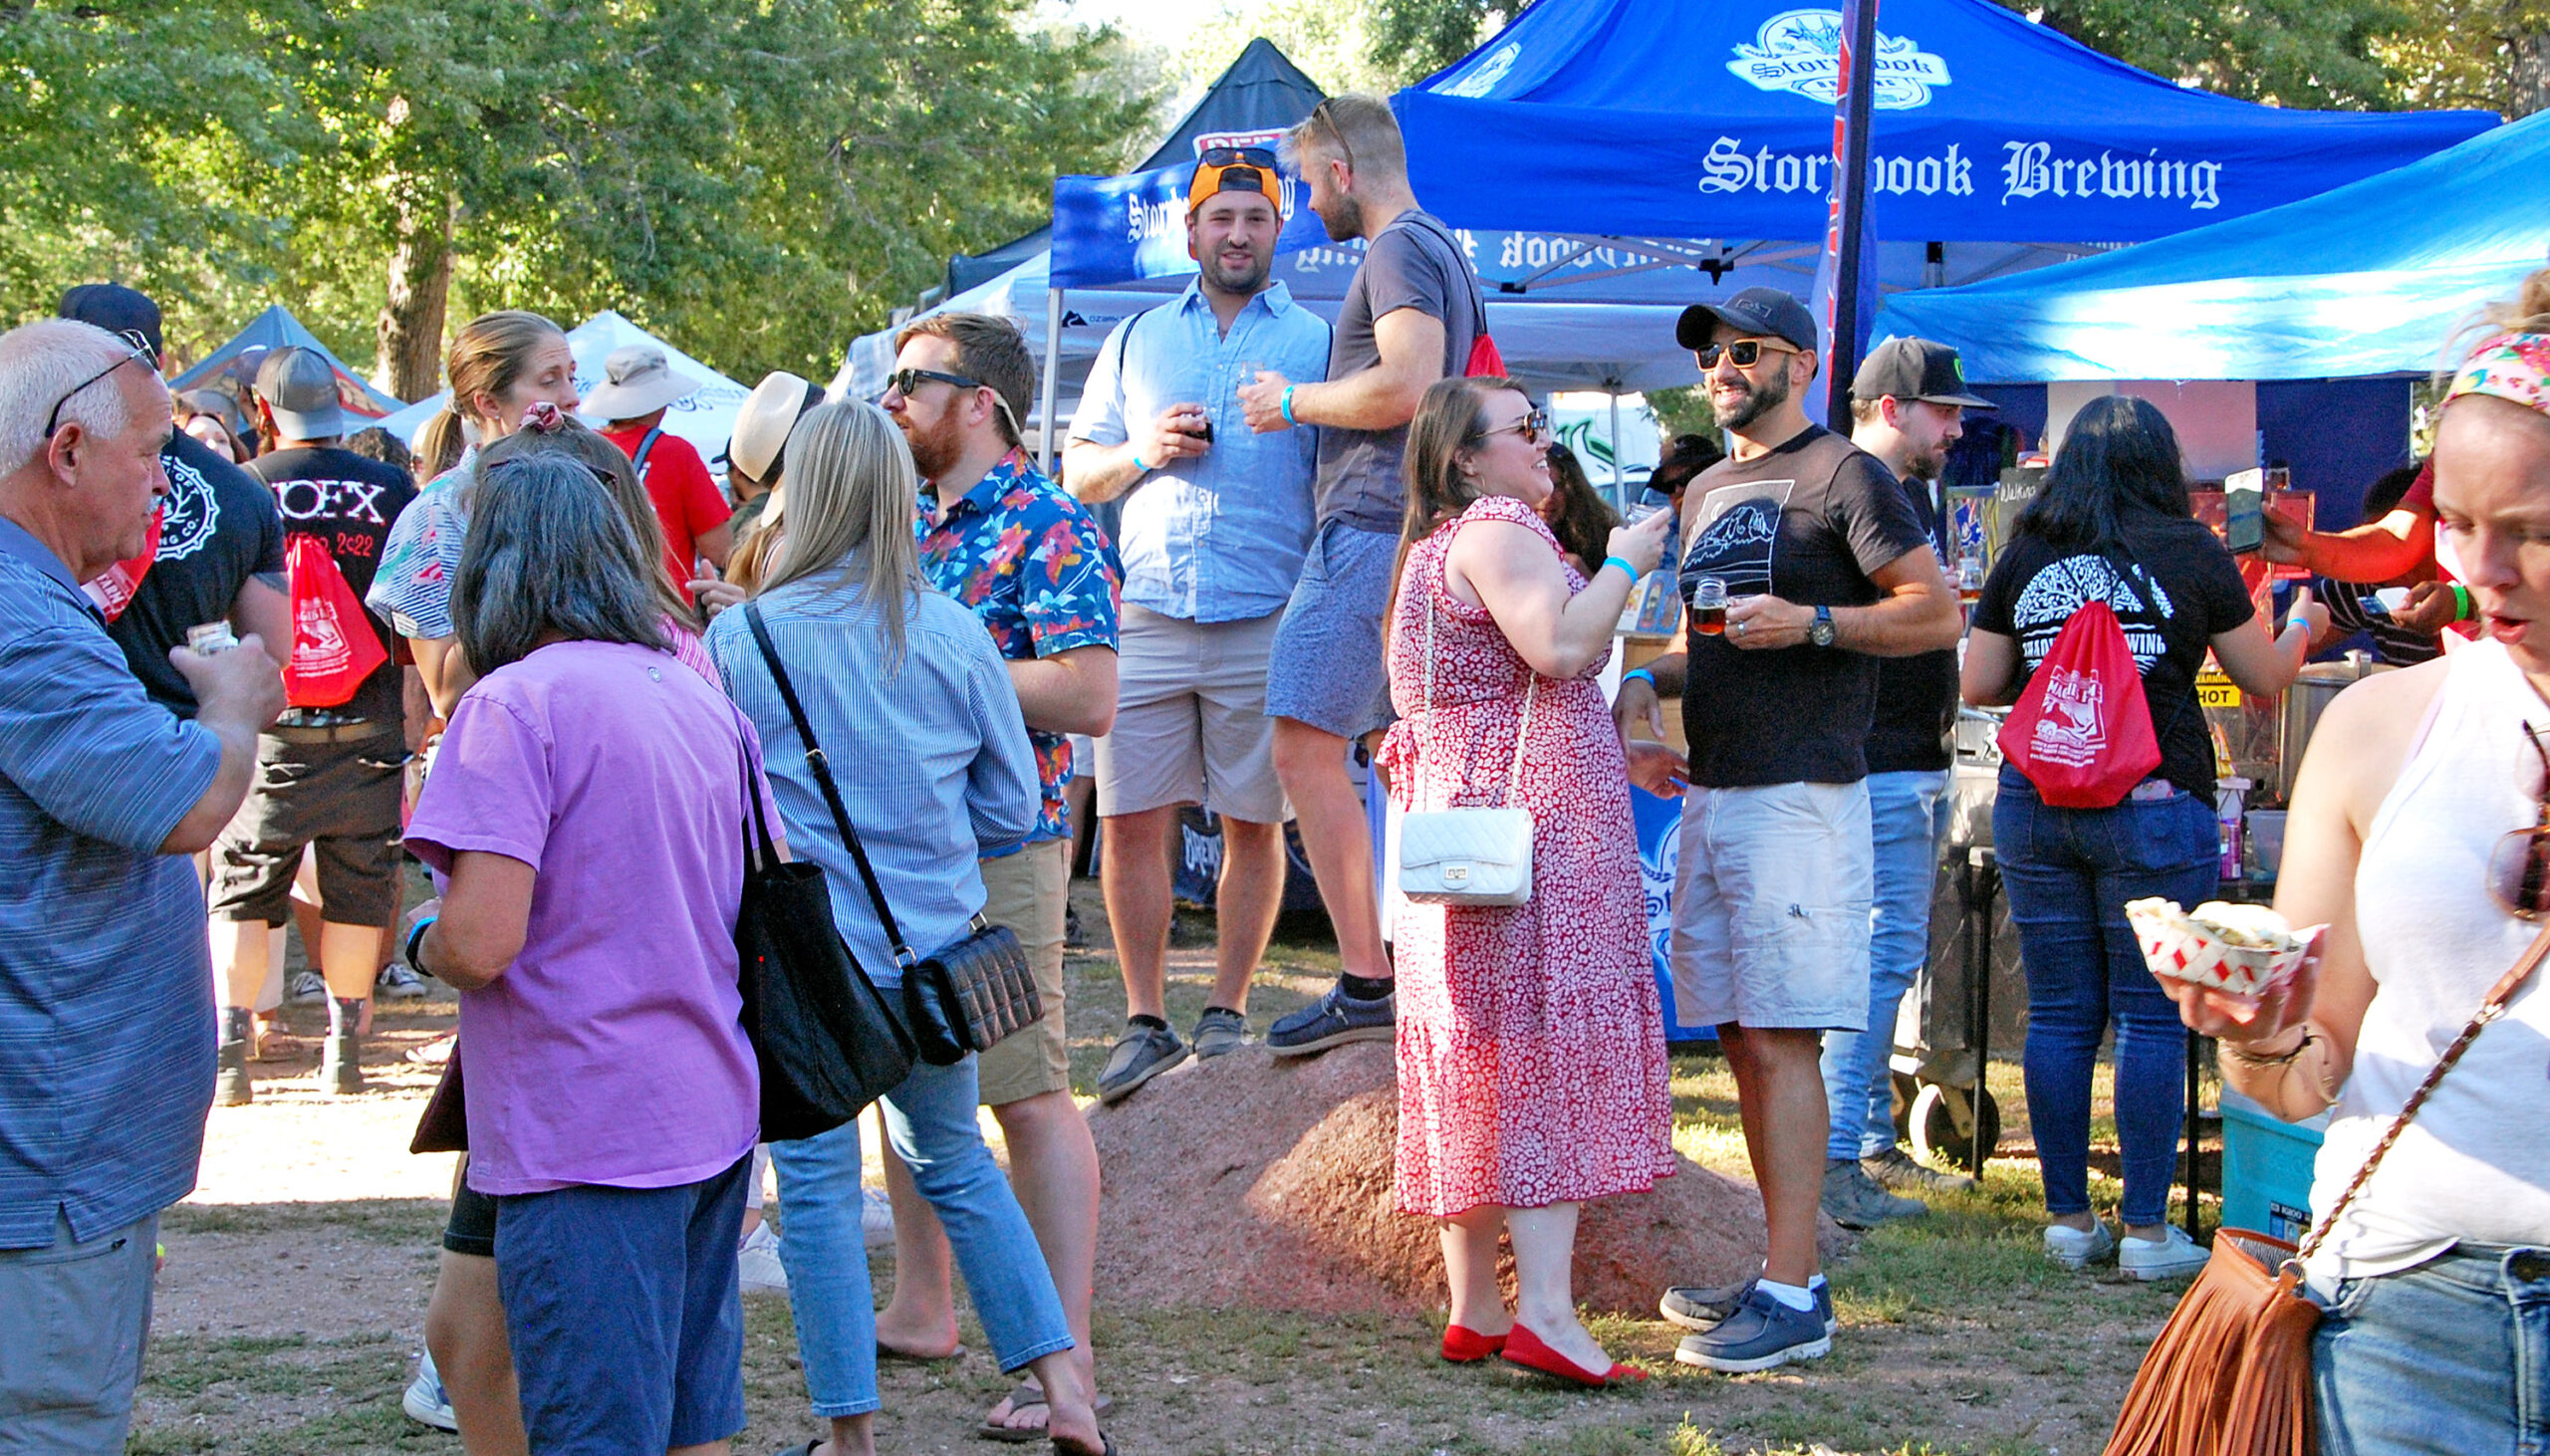 Photos by Rhonda Van Pelt. Soda Springs Park is filled with beer lovers sampling their favorite adult beverages.